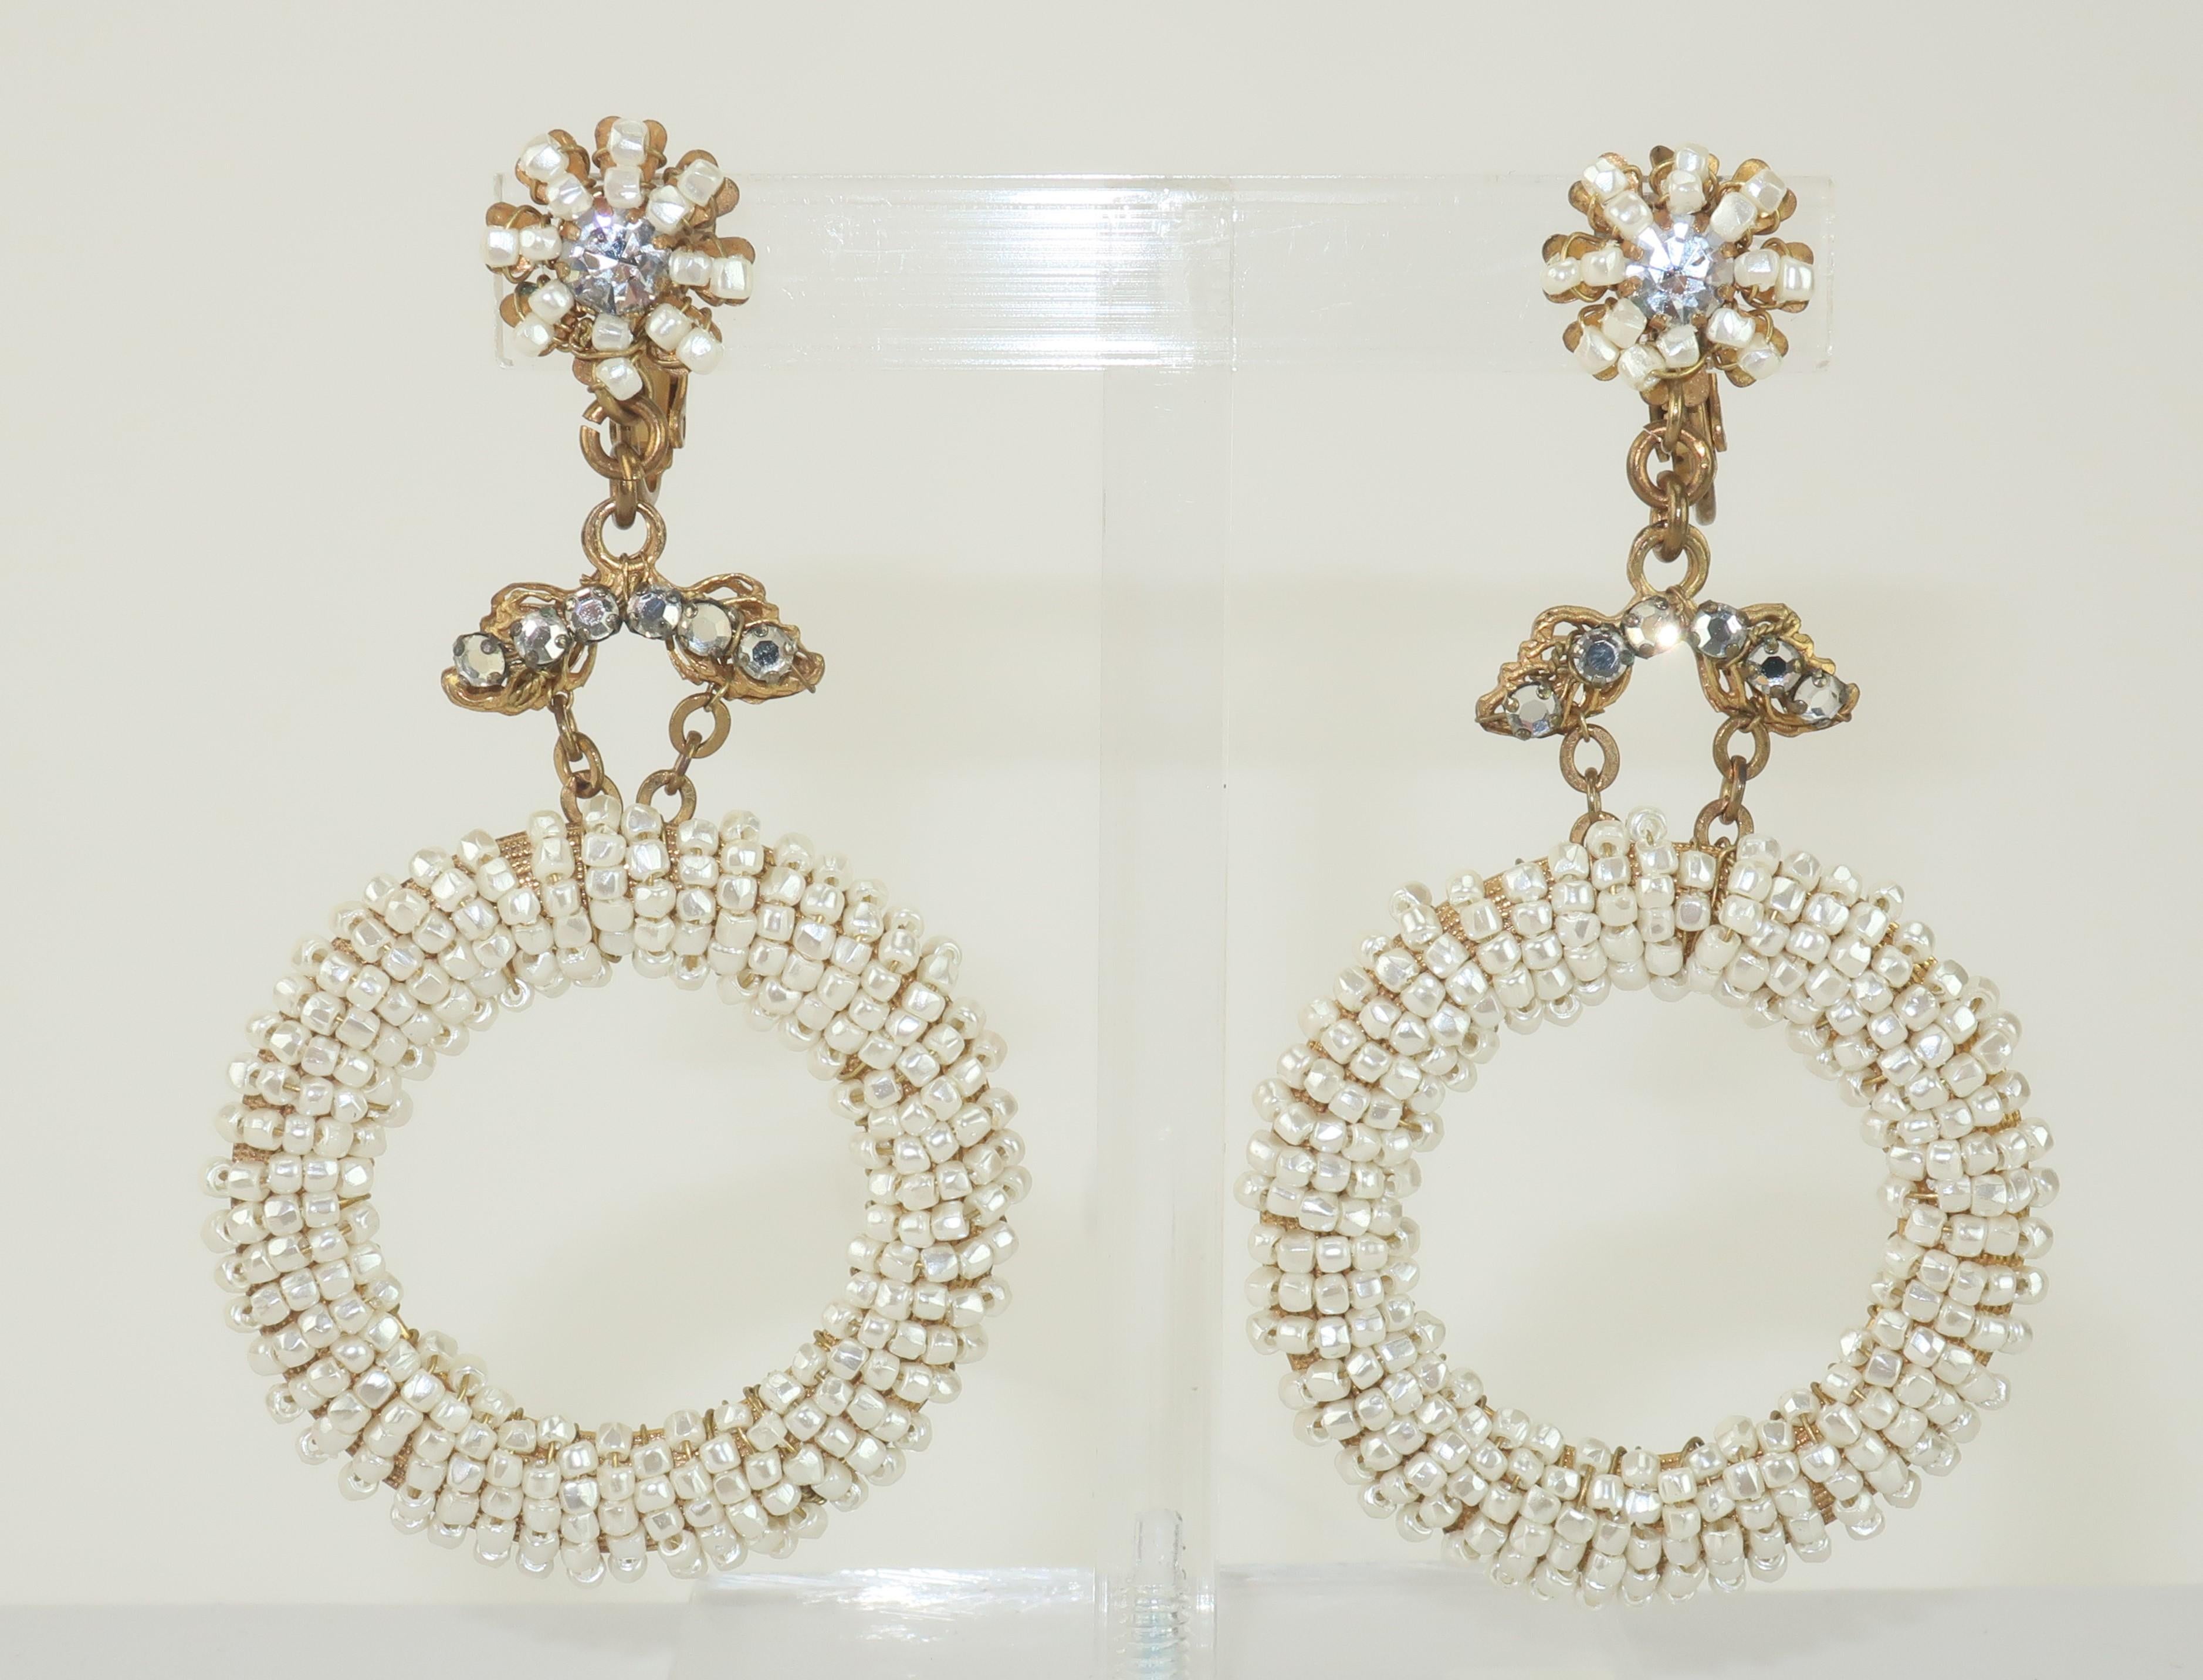 C.1960 Miriam Haskell-Ohrringe mit J-Ring und Clip.  Diese ätherischen Ohrringe sind eine schöne Kombination aus Haskells traditioneller Barockästhetik in einer jugendlicheren Silhouette.  Die winzigen Saatperlen sind auf einem vergoldeten Sockel